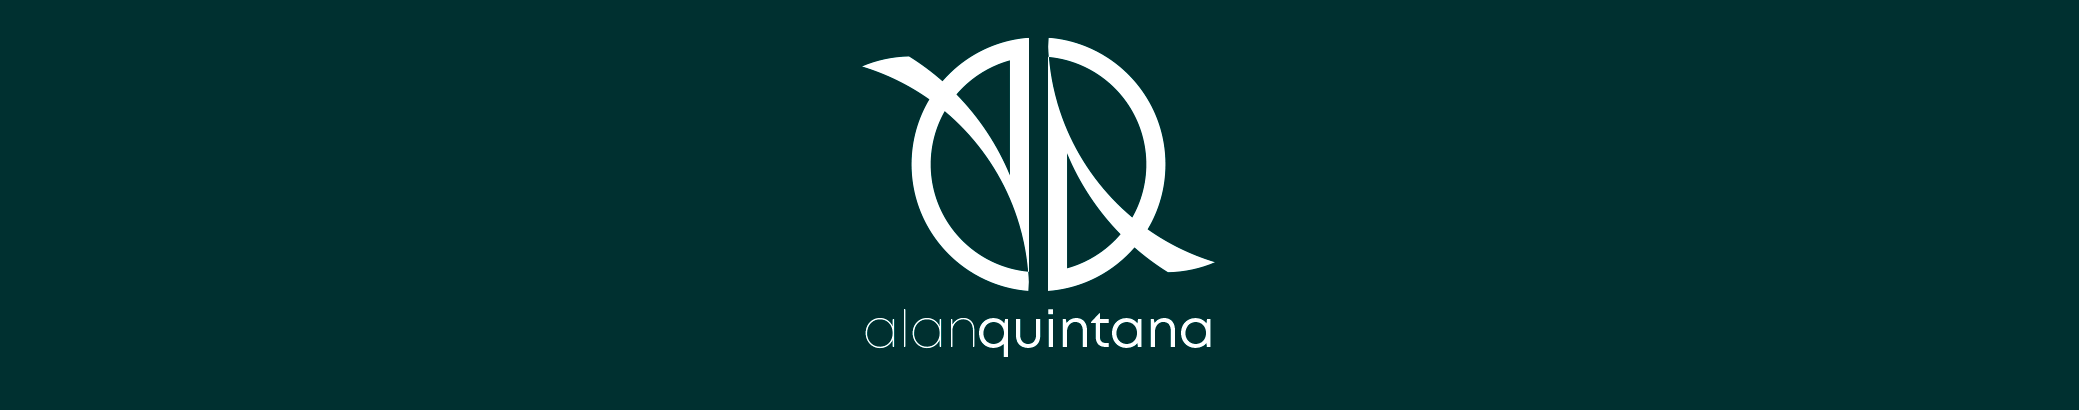 Alan Quintana 的個人檔案橫幅